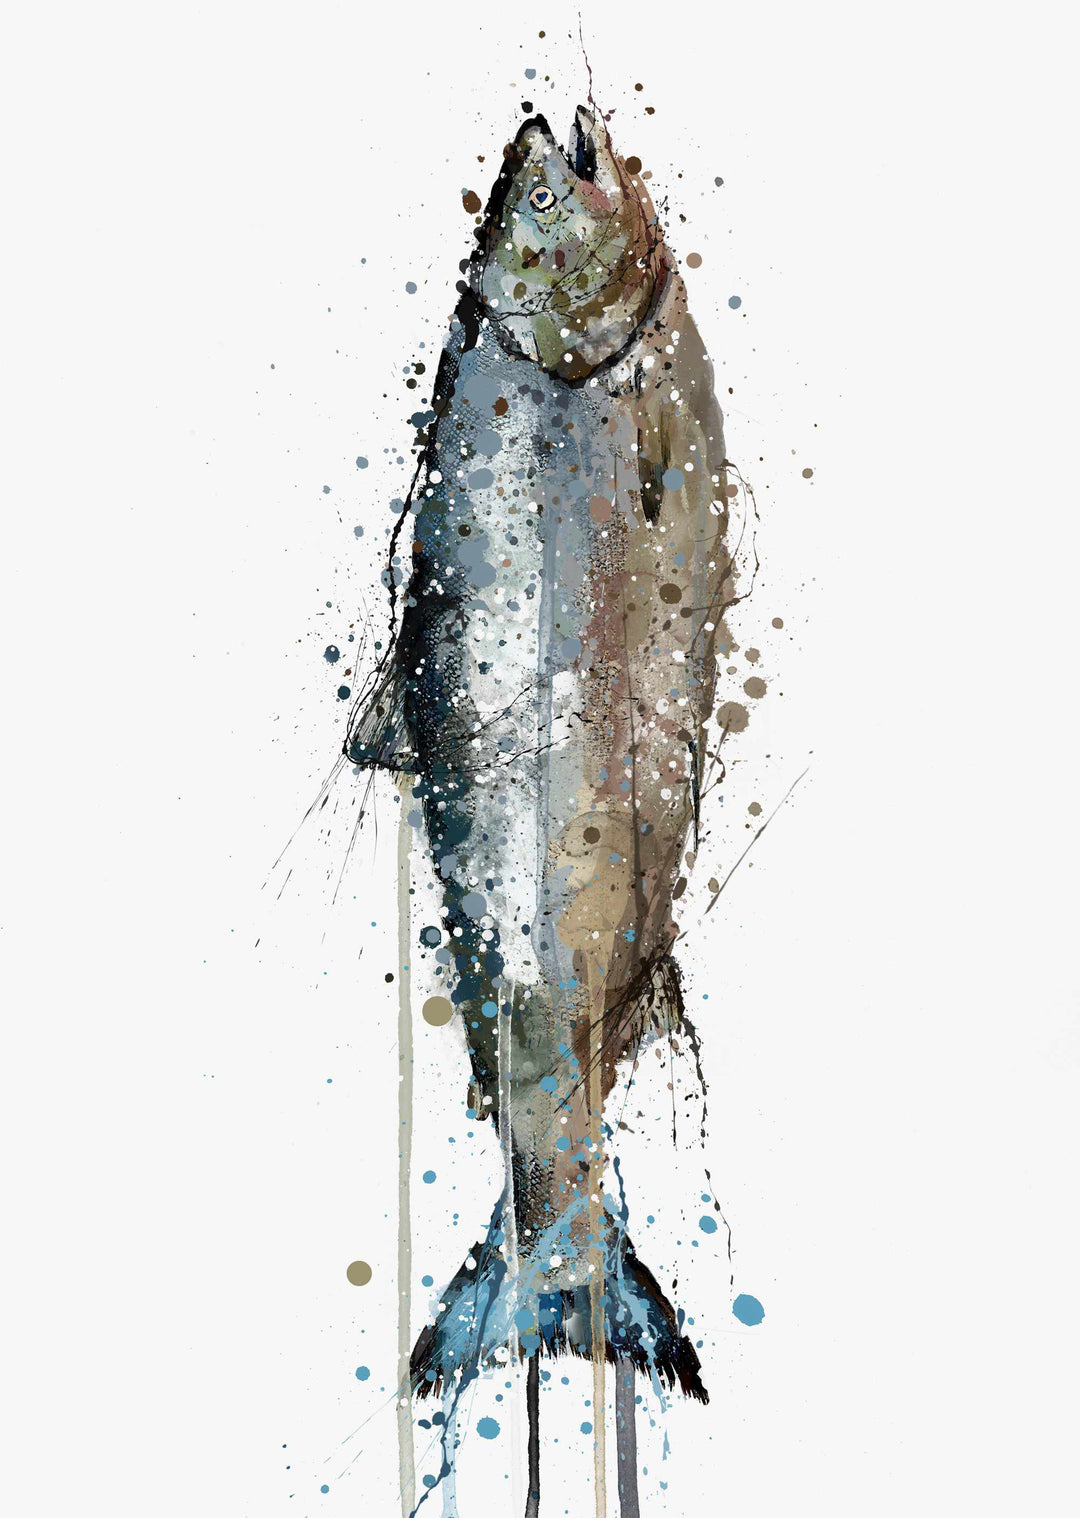 Seafood Wall Art Print 'Salmon'-We Love Prints